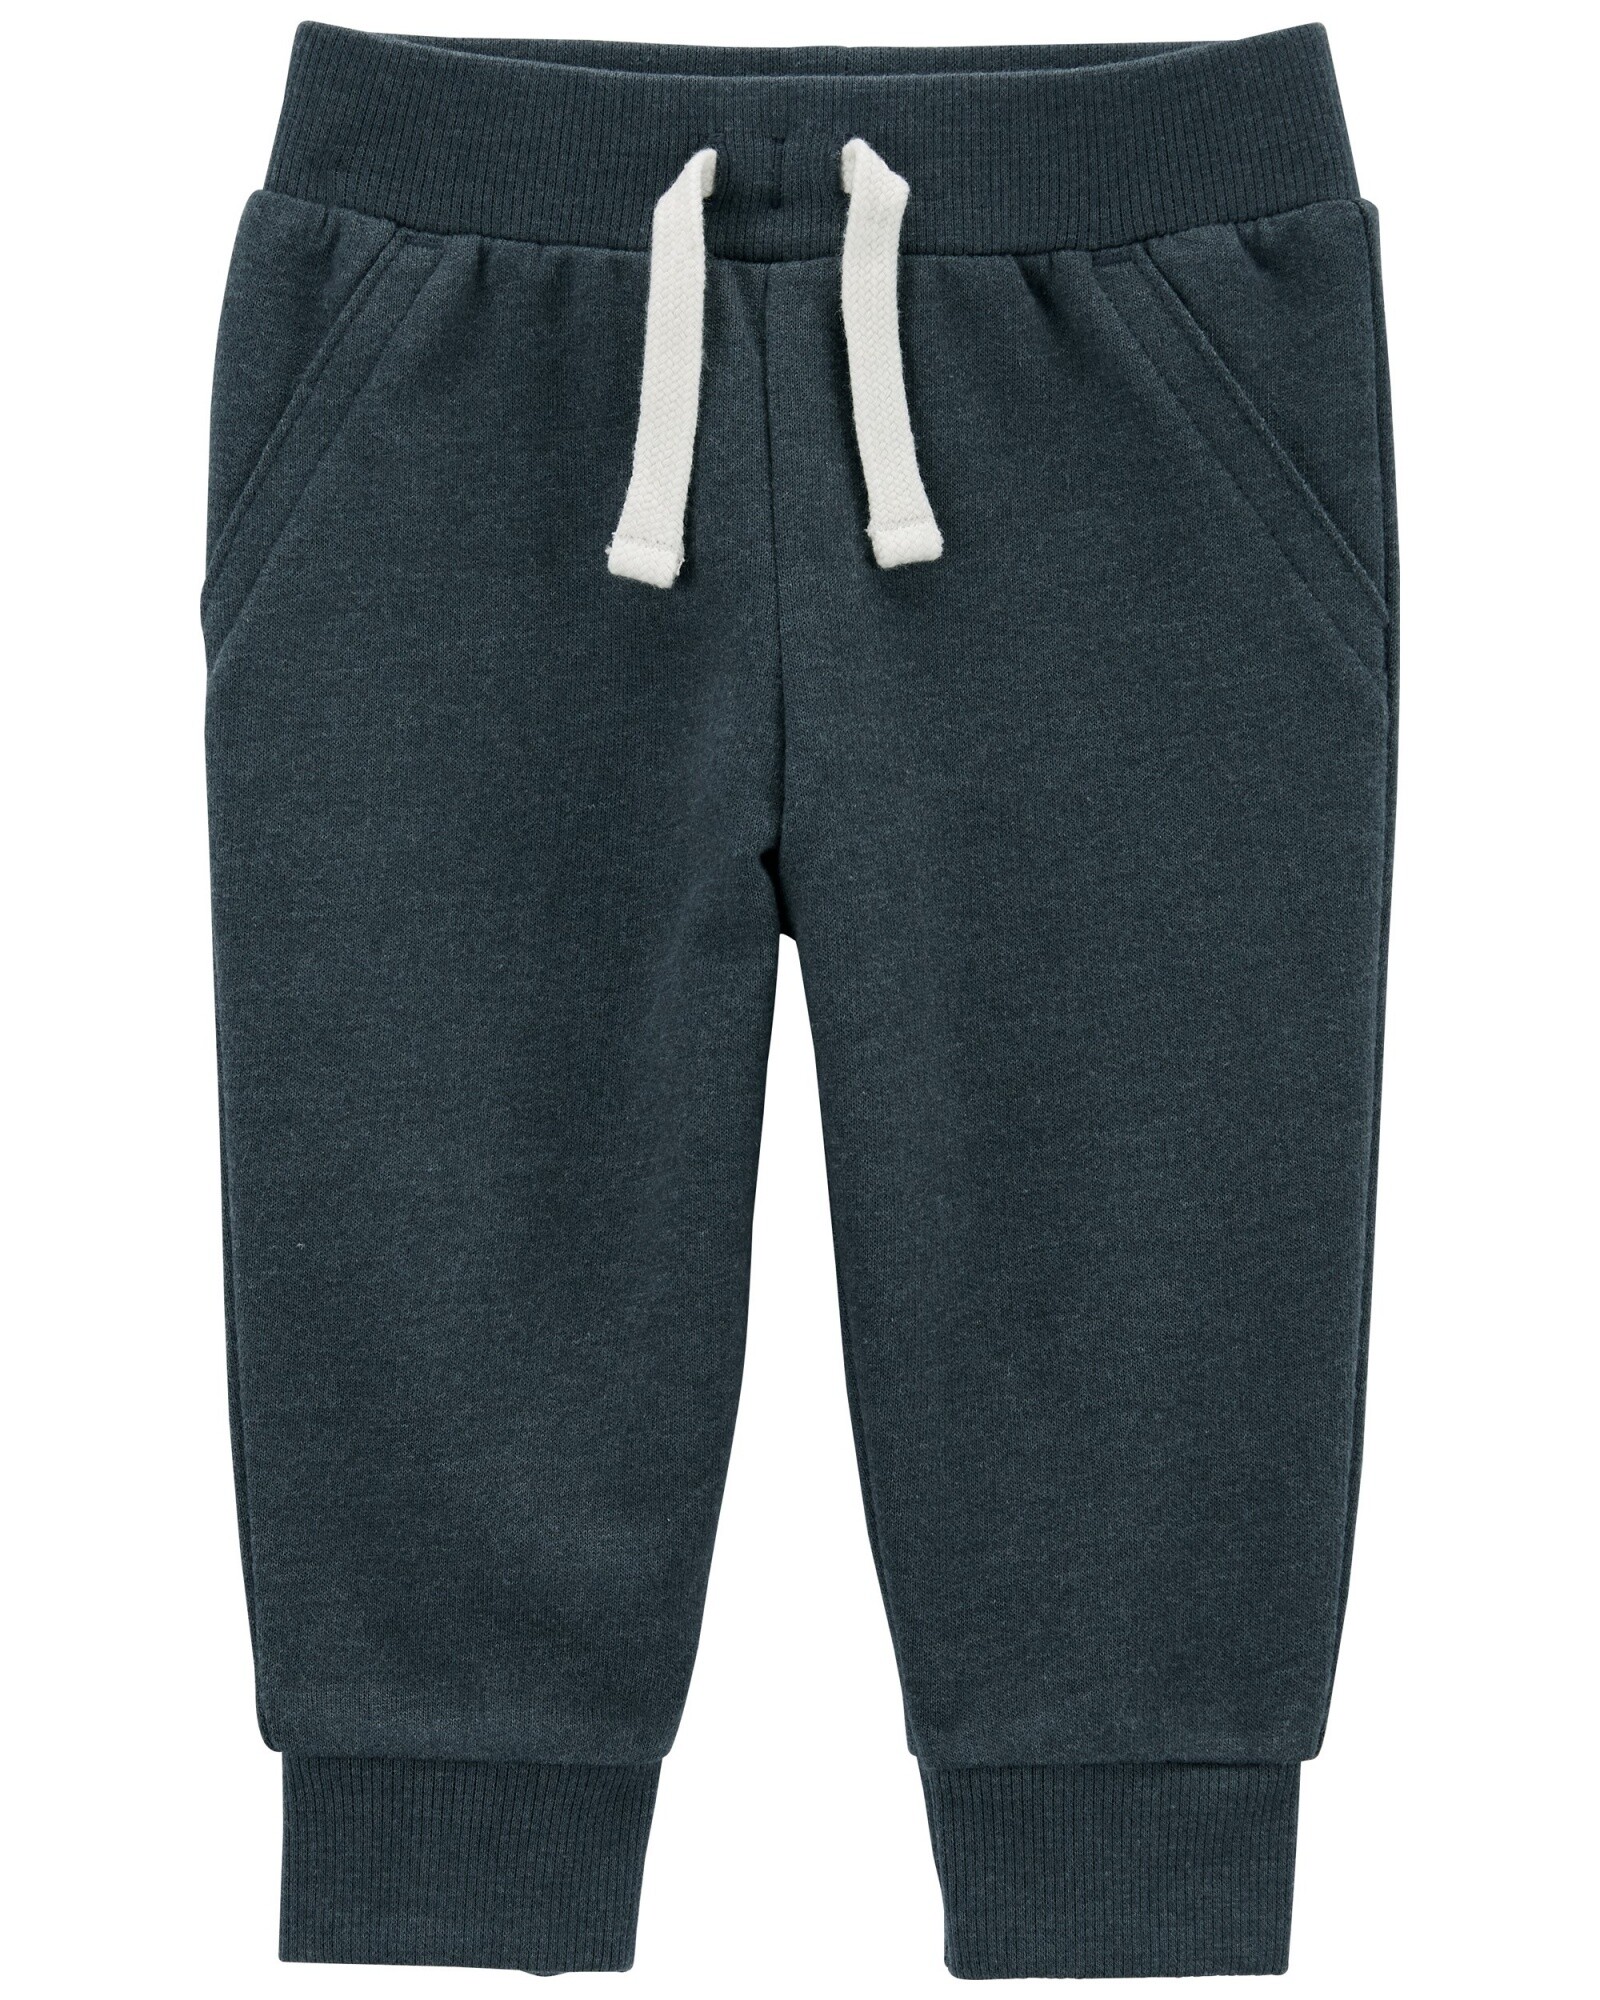 Pantalón deportivo de algodón, gris oscuro Sin color